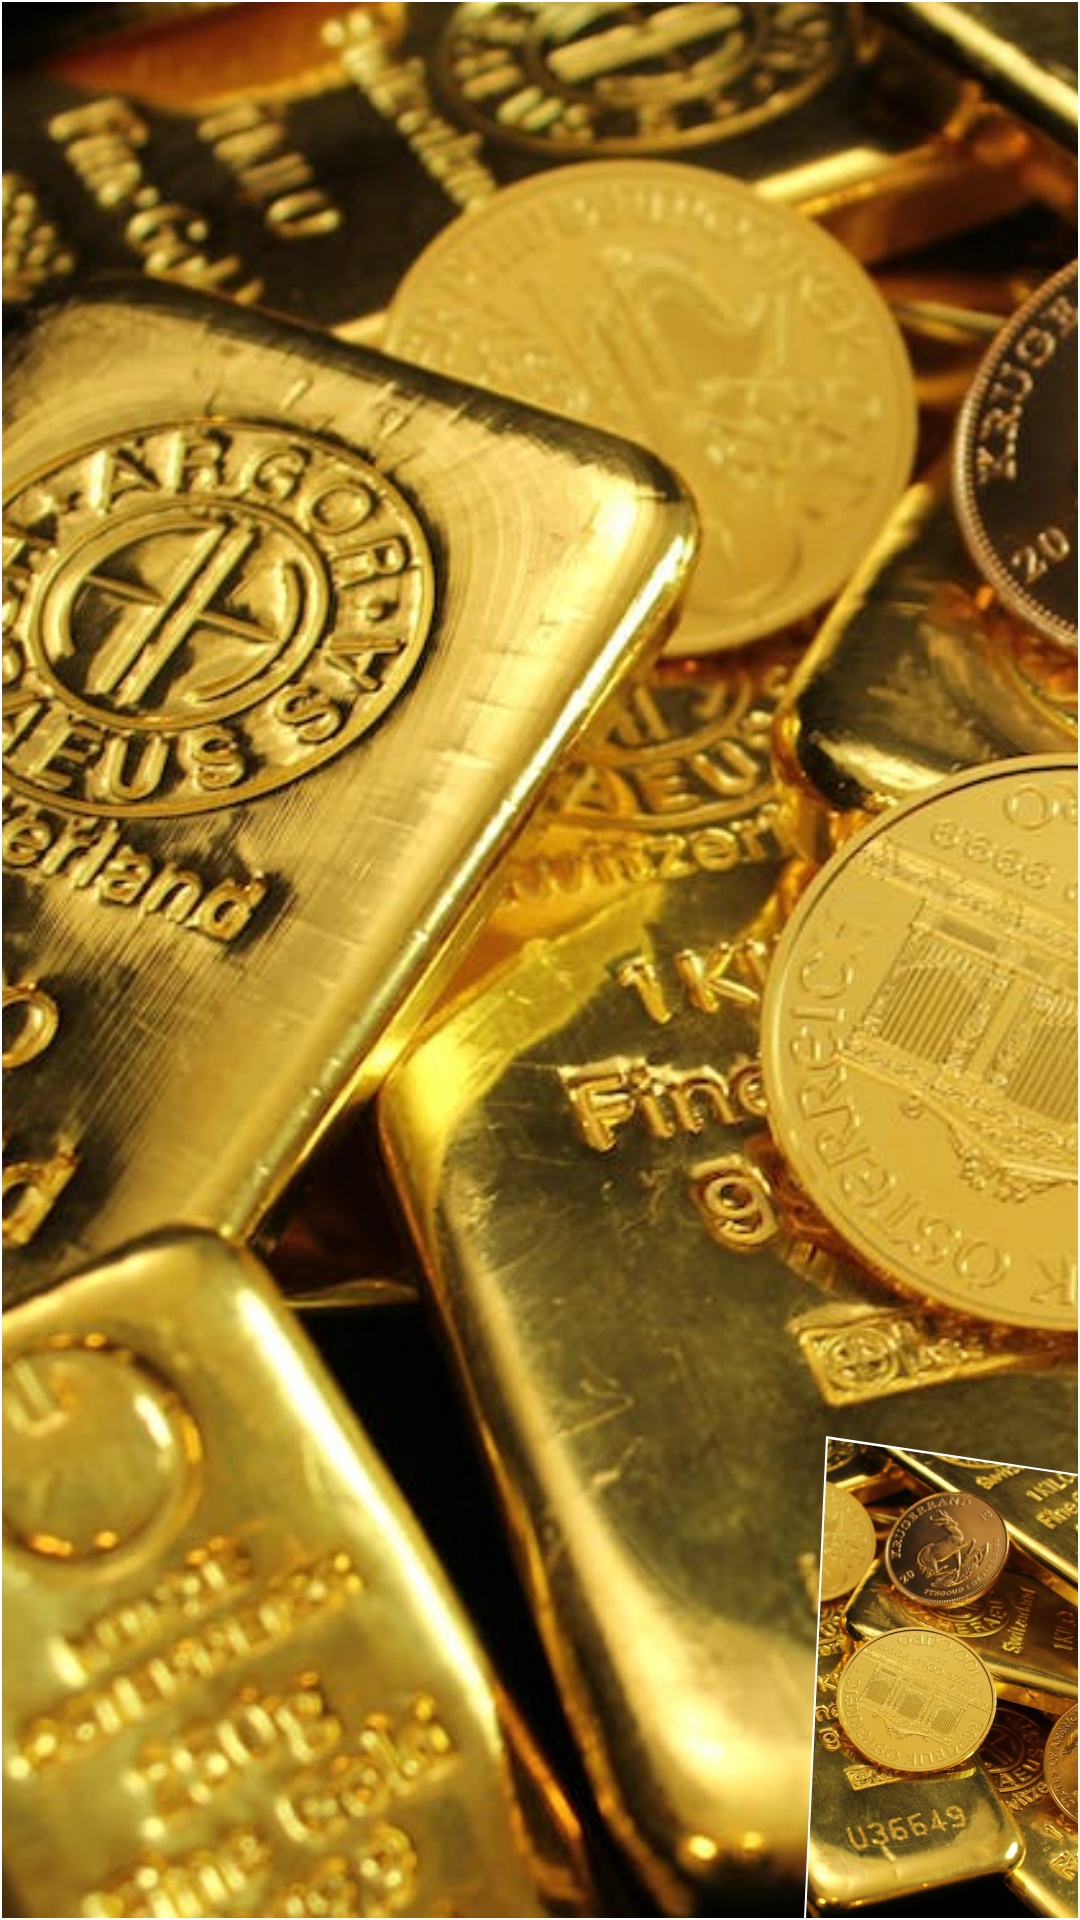 दुनिया में कहां मिलता है सबसे सस्ता सोना?